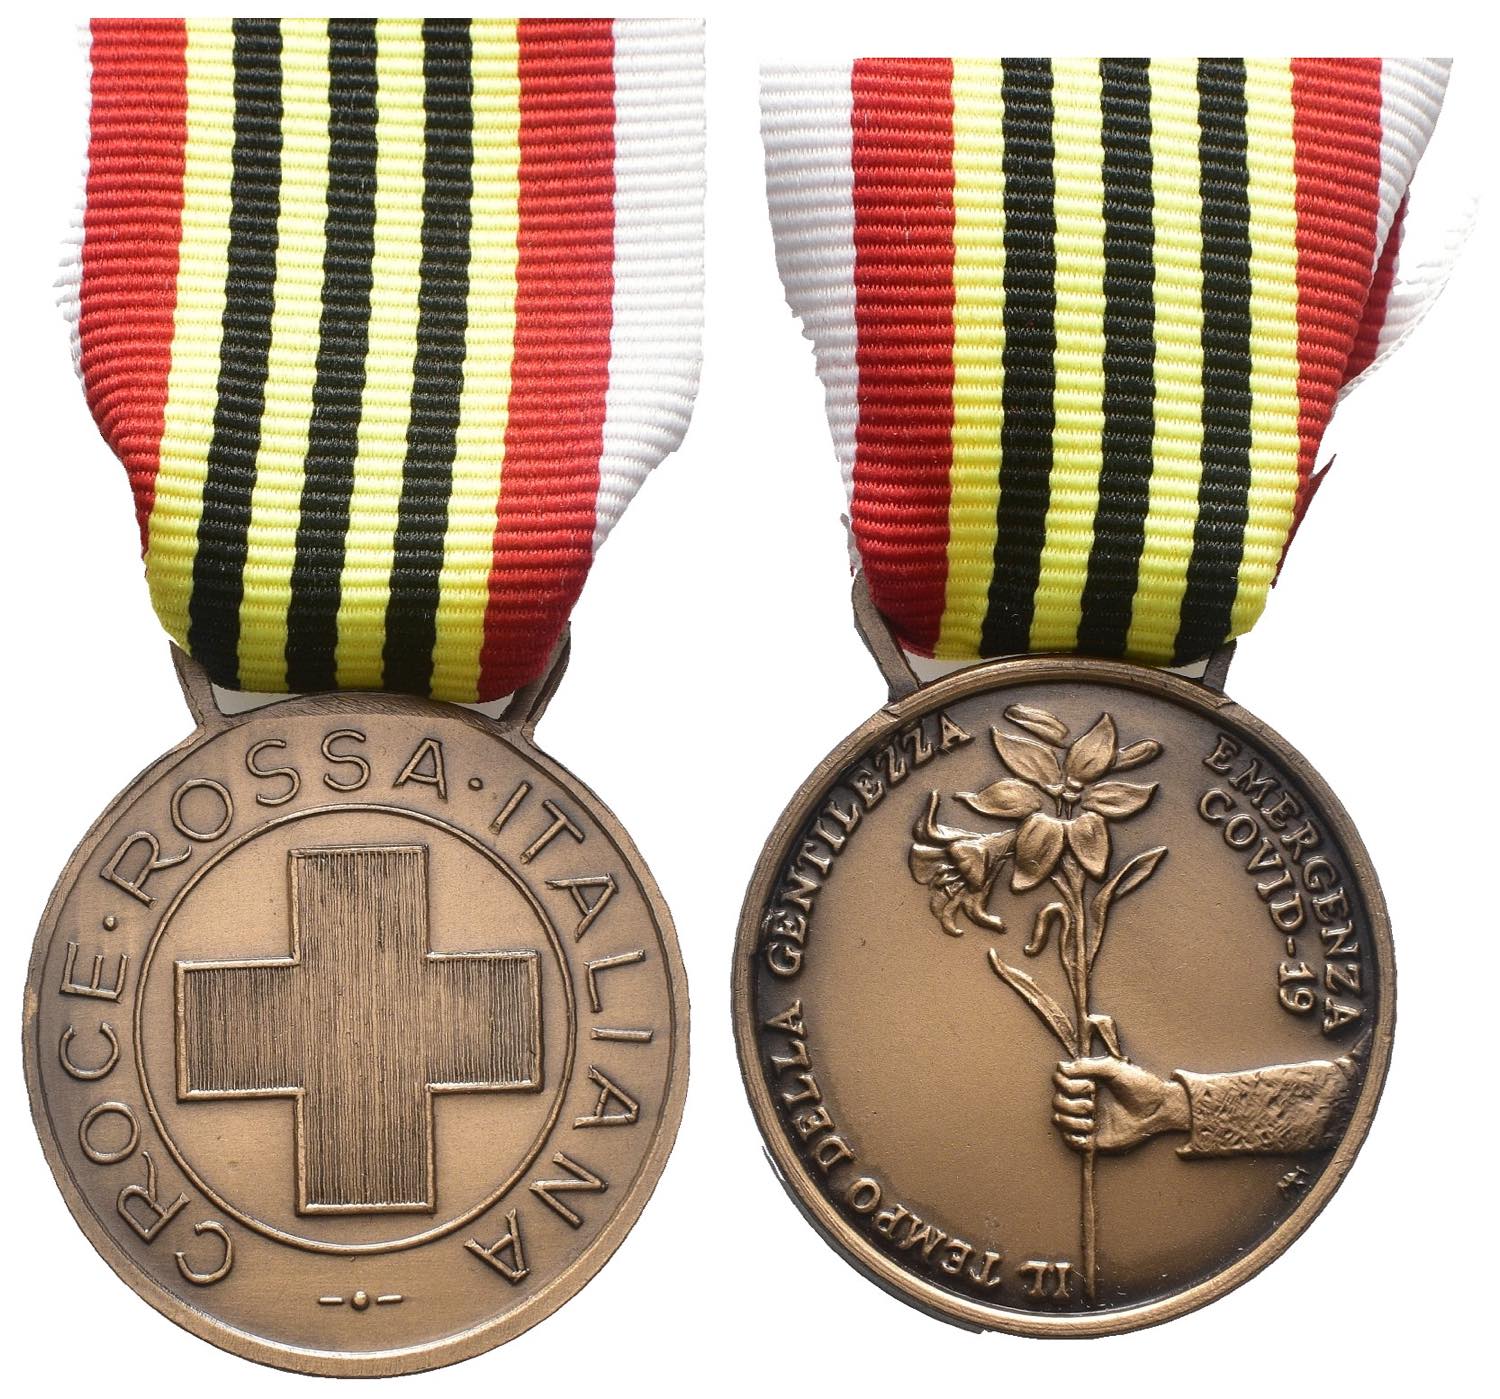 Medaglia - Croce Rossa, Il tempo della Gentilezza  - Numismatica  Ferrarese Aste Numismatiche - Shop Monete